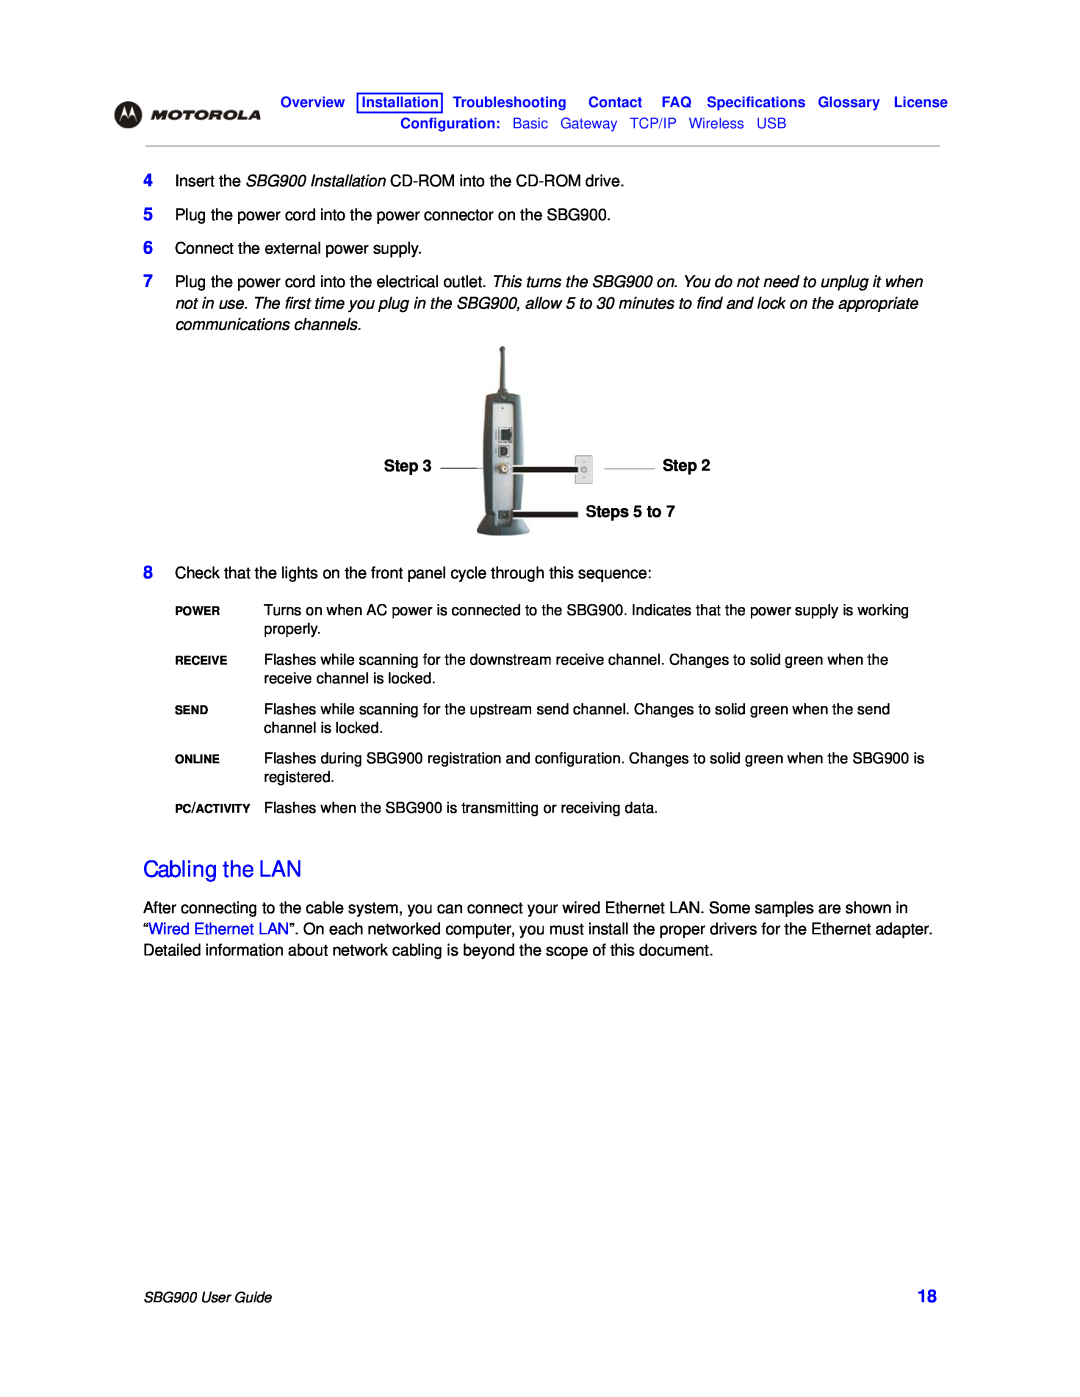 Motorola SBG900 manual Cabling the LAN, Steps 5 to 